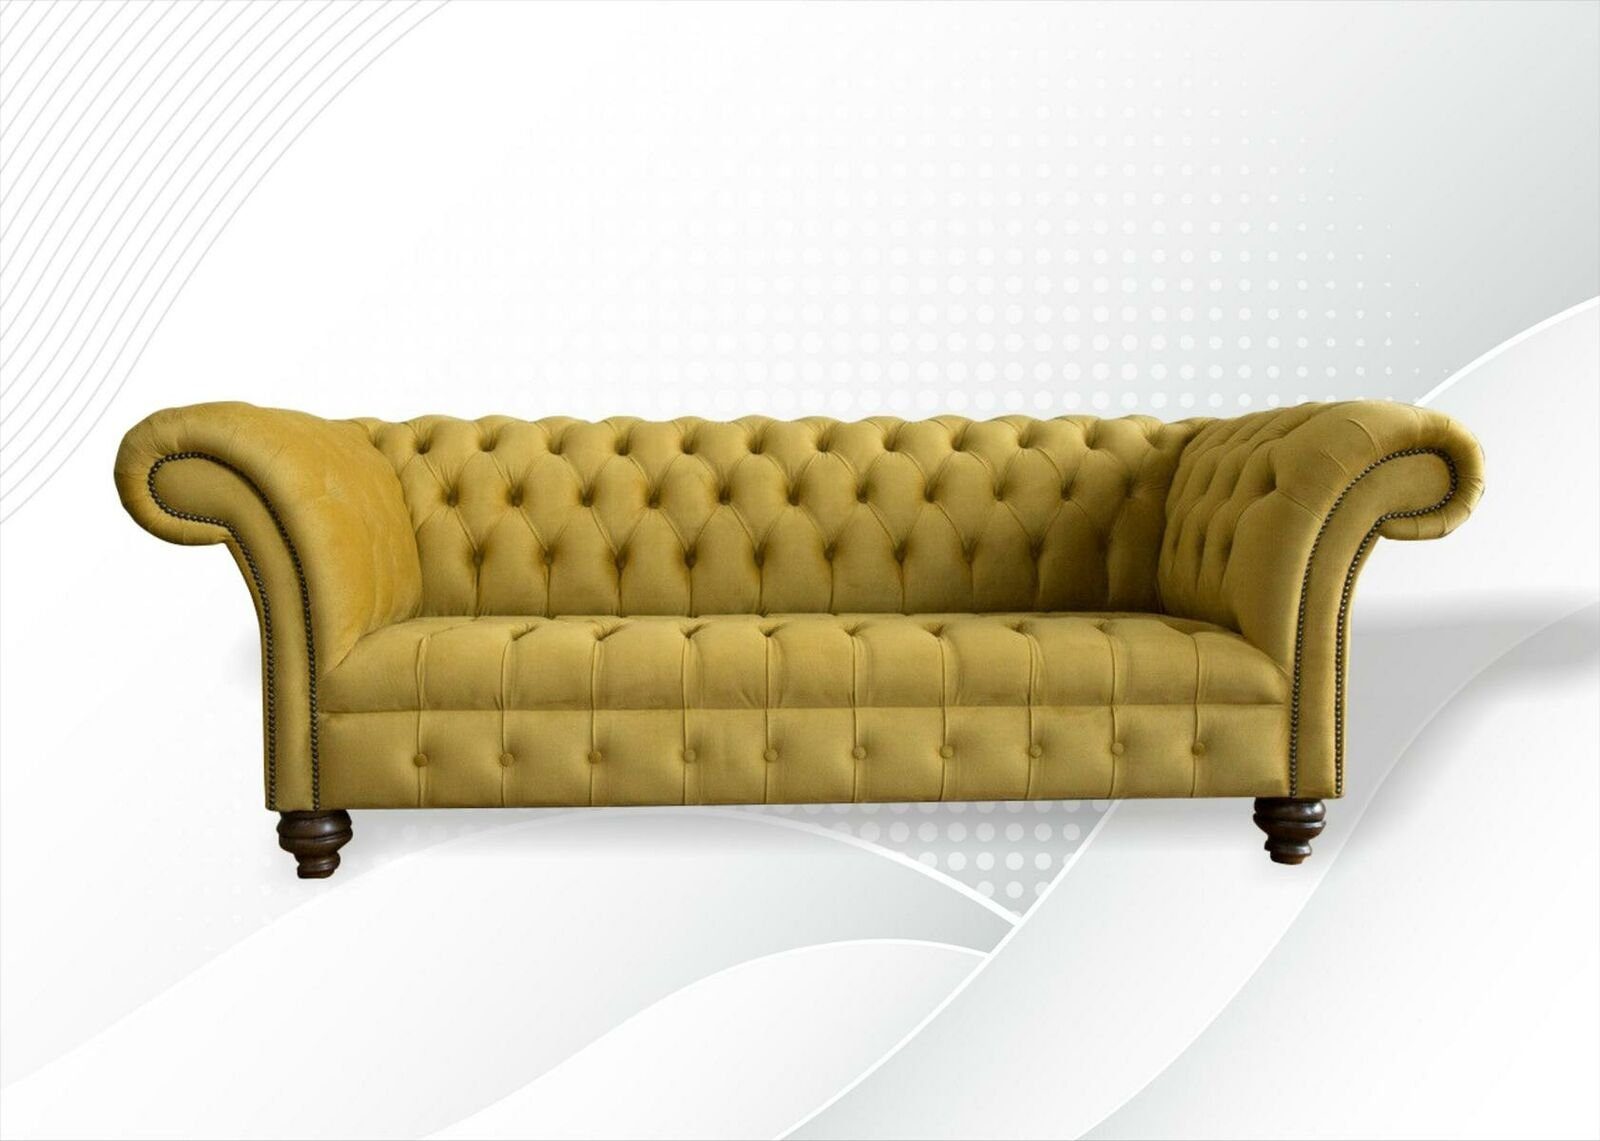 JVmoebel Chesterfield-Sofa Gelber Dreisitzer luxus Chesterfield 3-er Couch Design Neu, Made in Europe